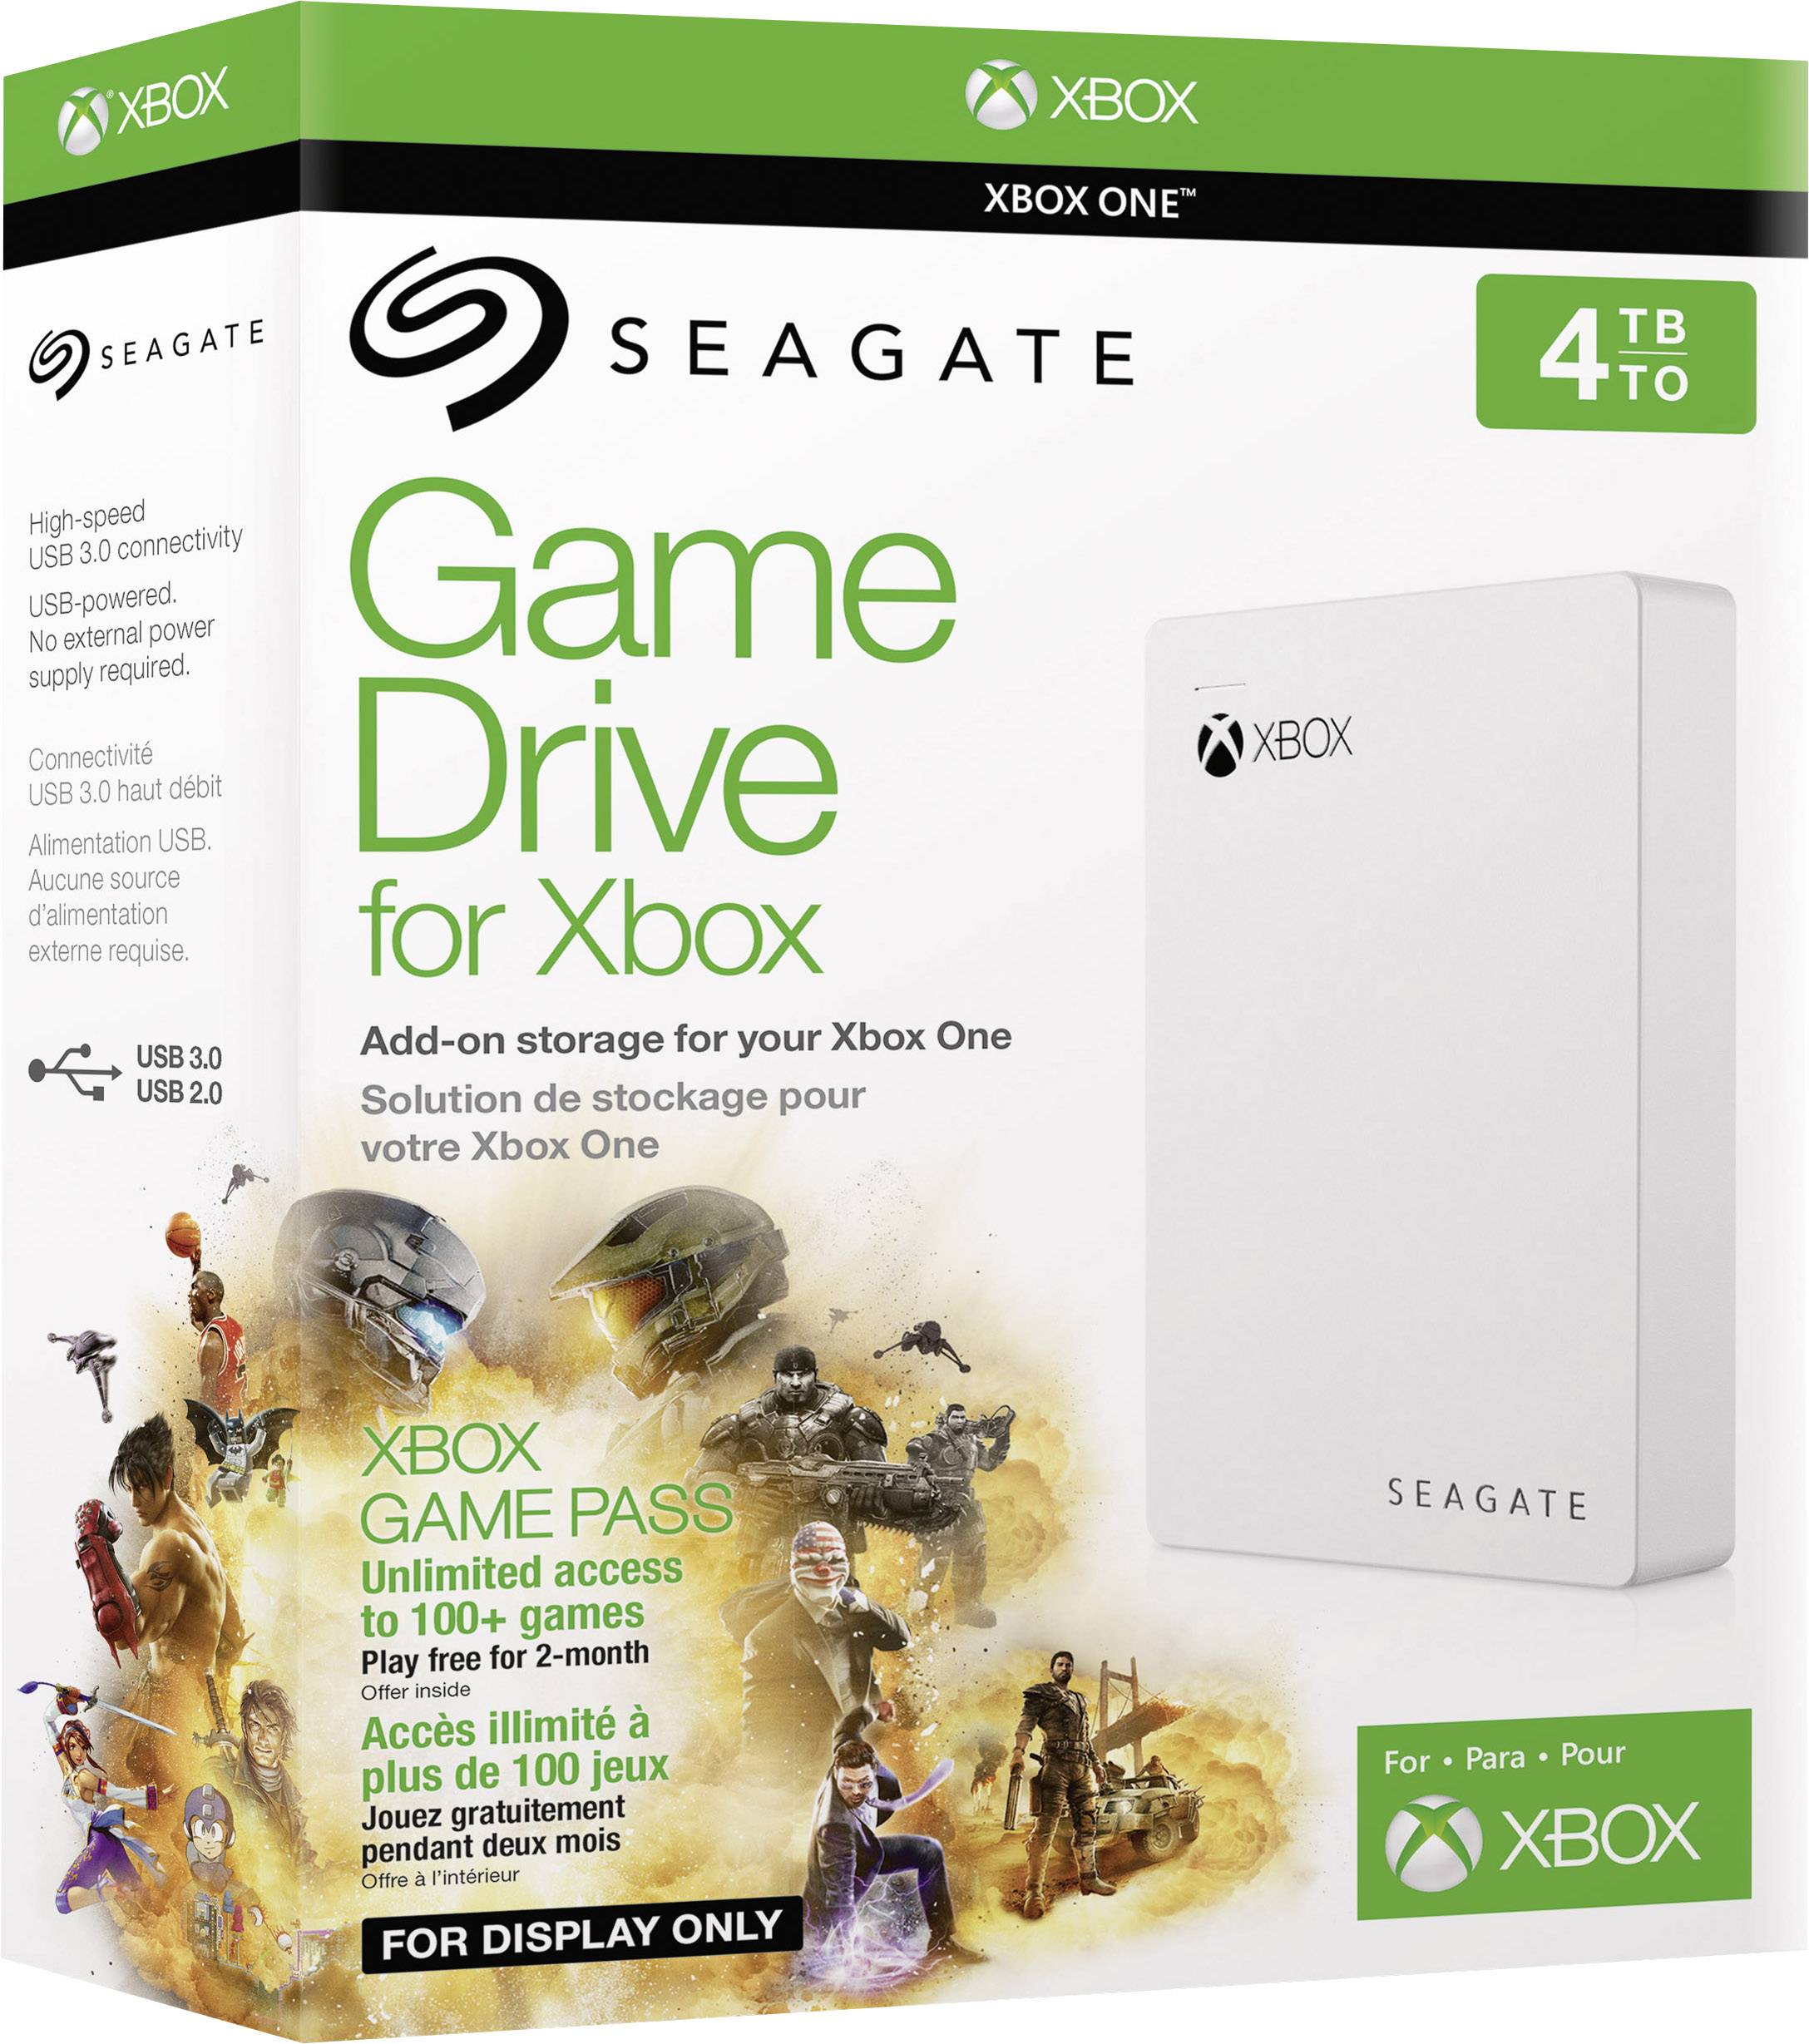 Seagate game drive. Seagate game Drive for Xbox 4tb.